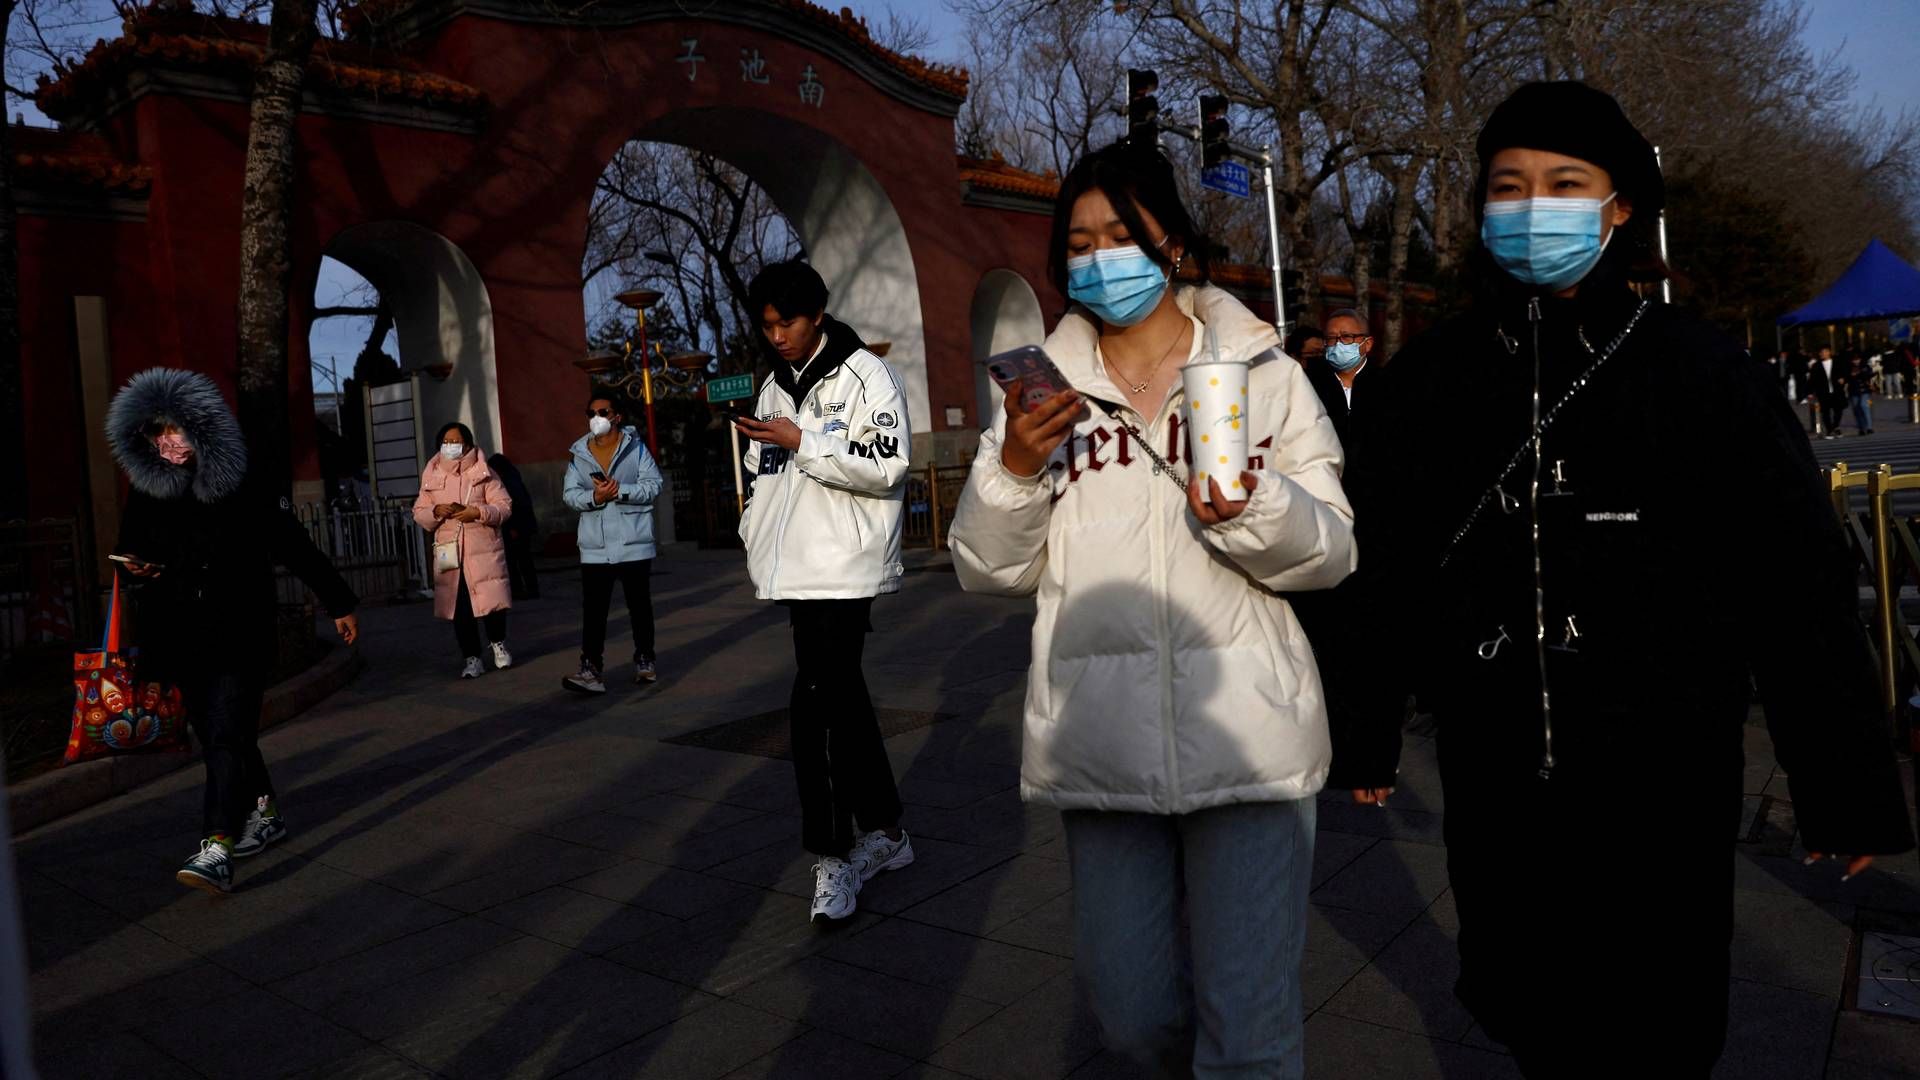 Selvom der er internationalt fokus på en uidentificeret luftvejssygdom og lungebetændelse i Kina, er der ifølge flere rådgivere i øjeblikket ingen grund til at frygte en ny pandemi i stil med covid-19. | Foto: Tingshu Wang